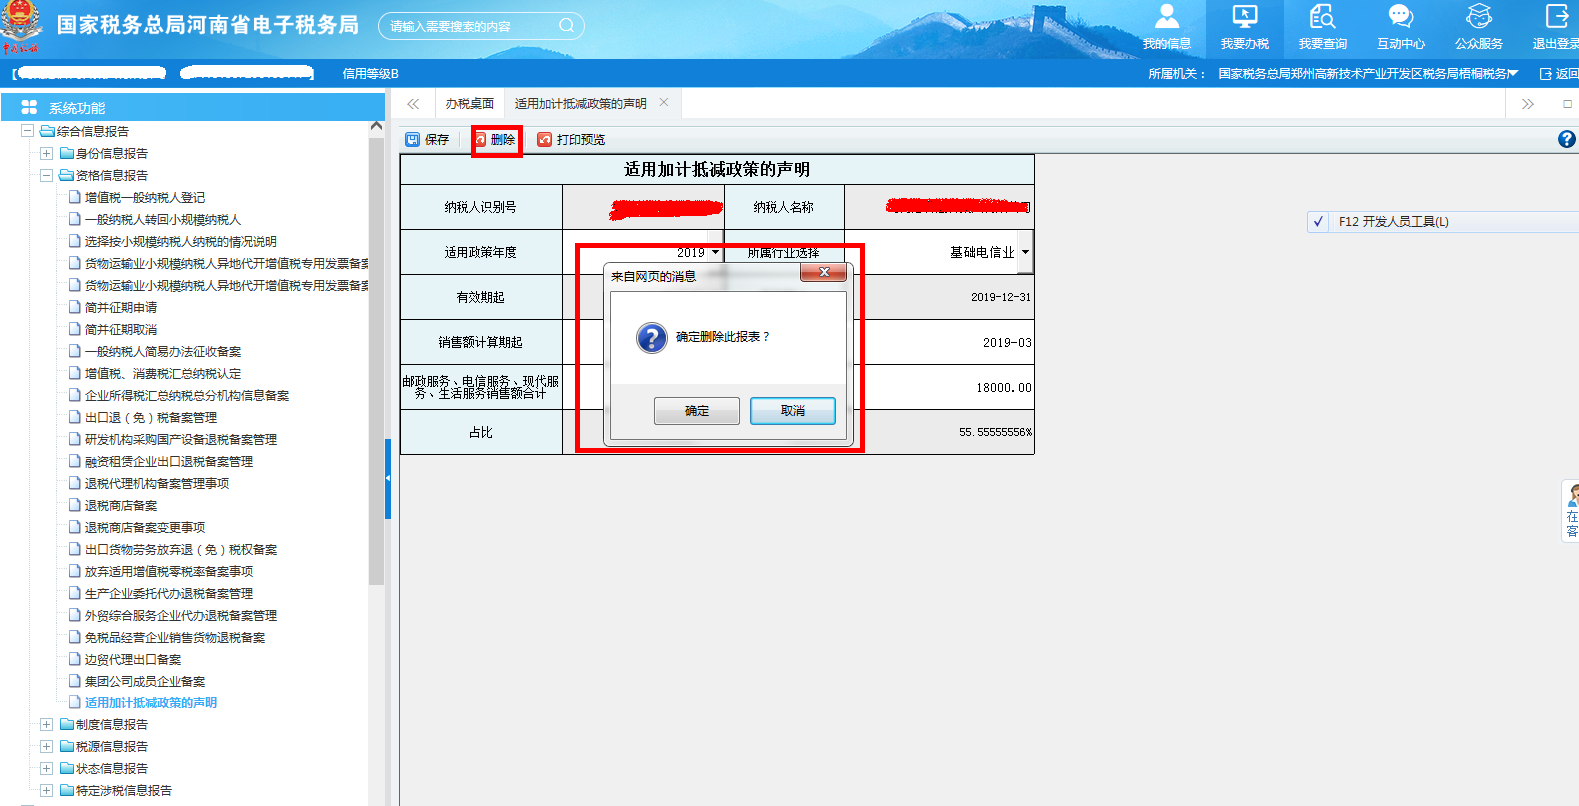 河南省电子税务局适用加计抵减政策的声明删除信息